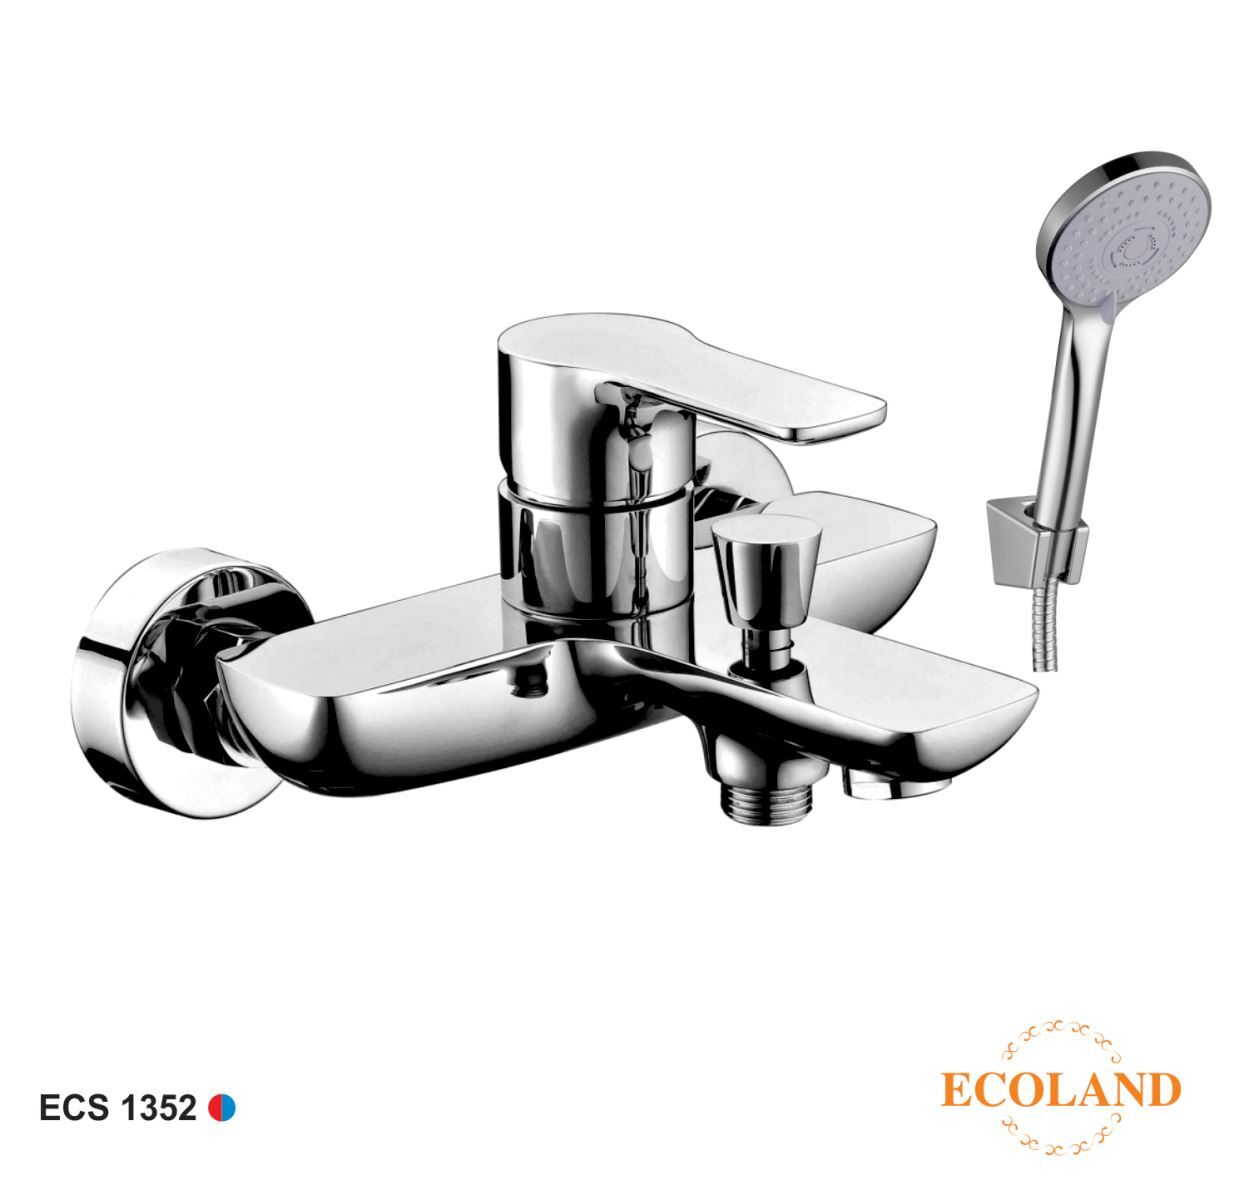 Củ sen nóng lạnh Ecoland ECS1352